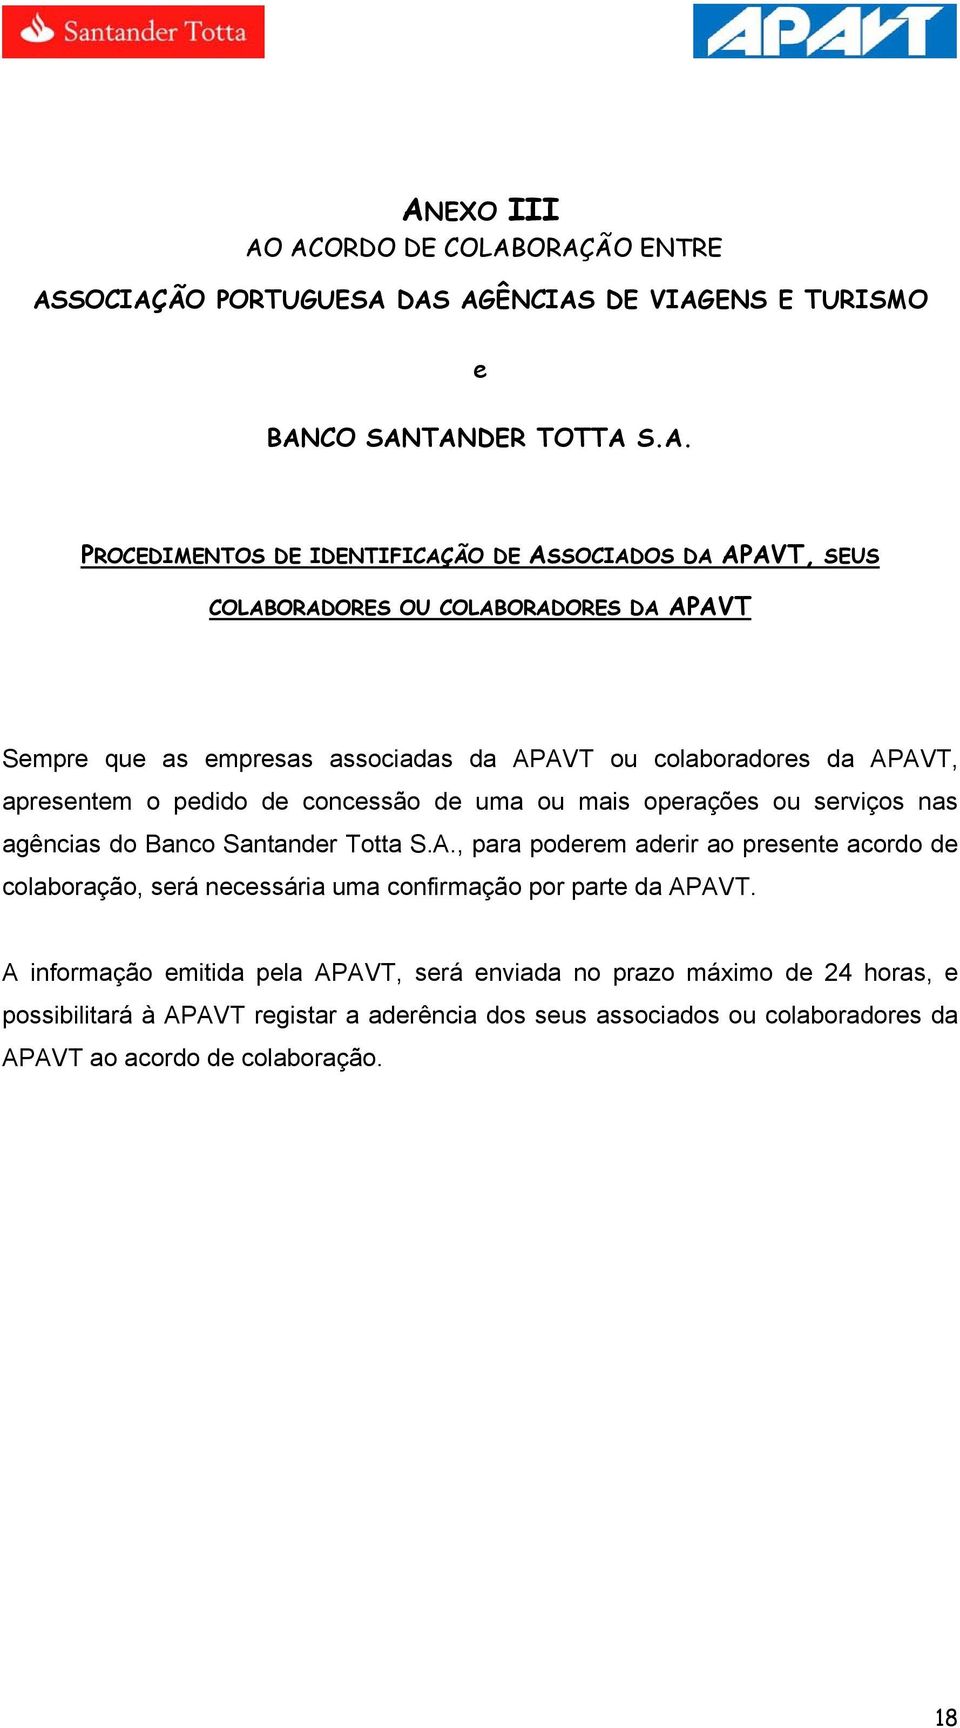 operações ou serviços nas agências do Banco Santander Totta S.A., para poderem aderir ao presente acordo de colaboração, será necessária uma confirmação por parte da APAVT.